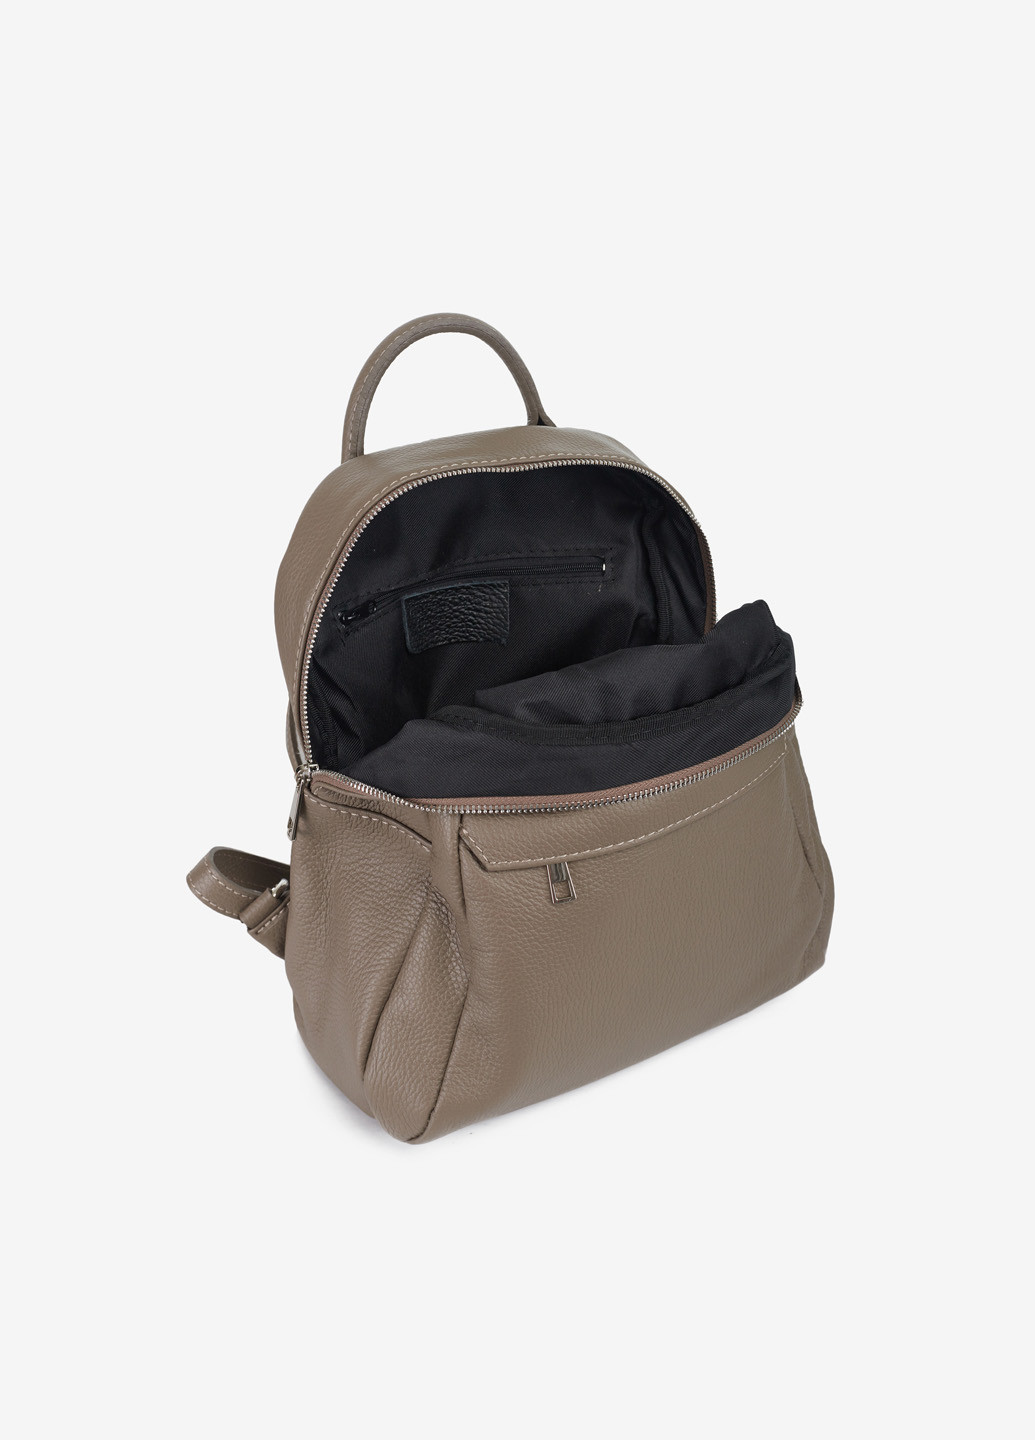 Рюкзак женский кожаный Backpack Regina Notte (269000229)